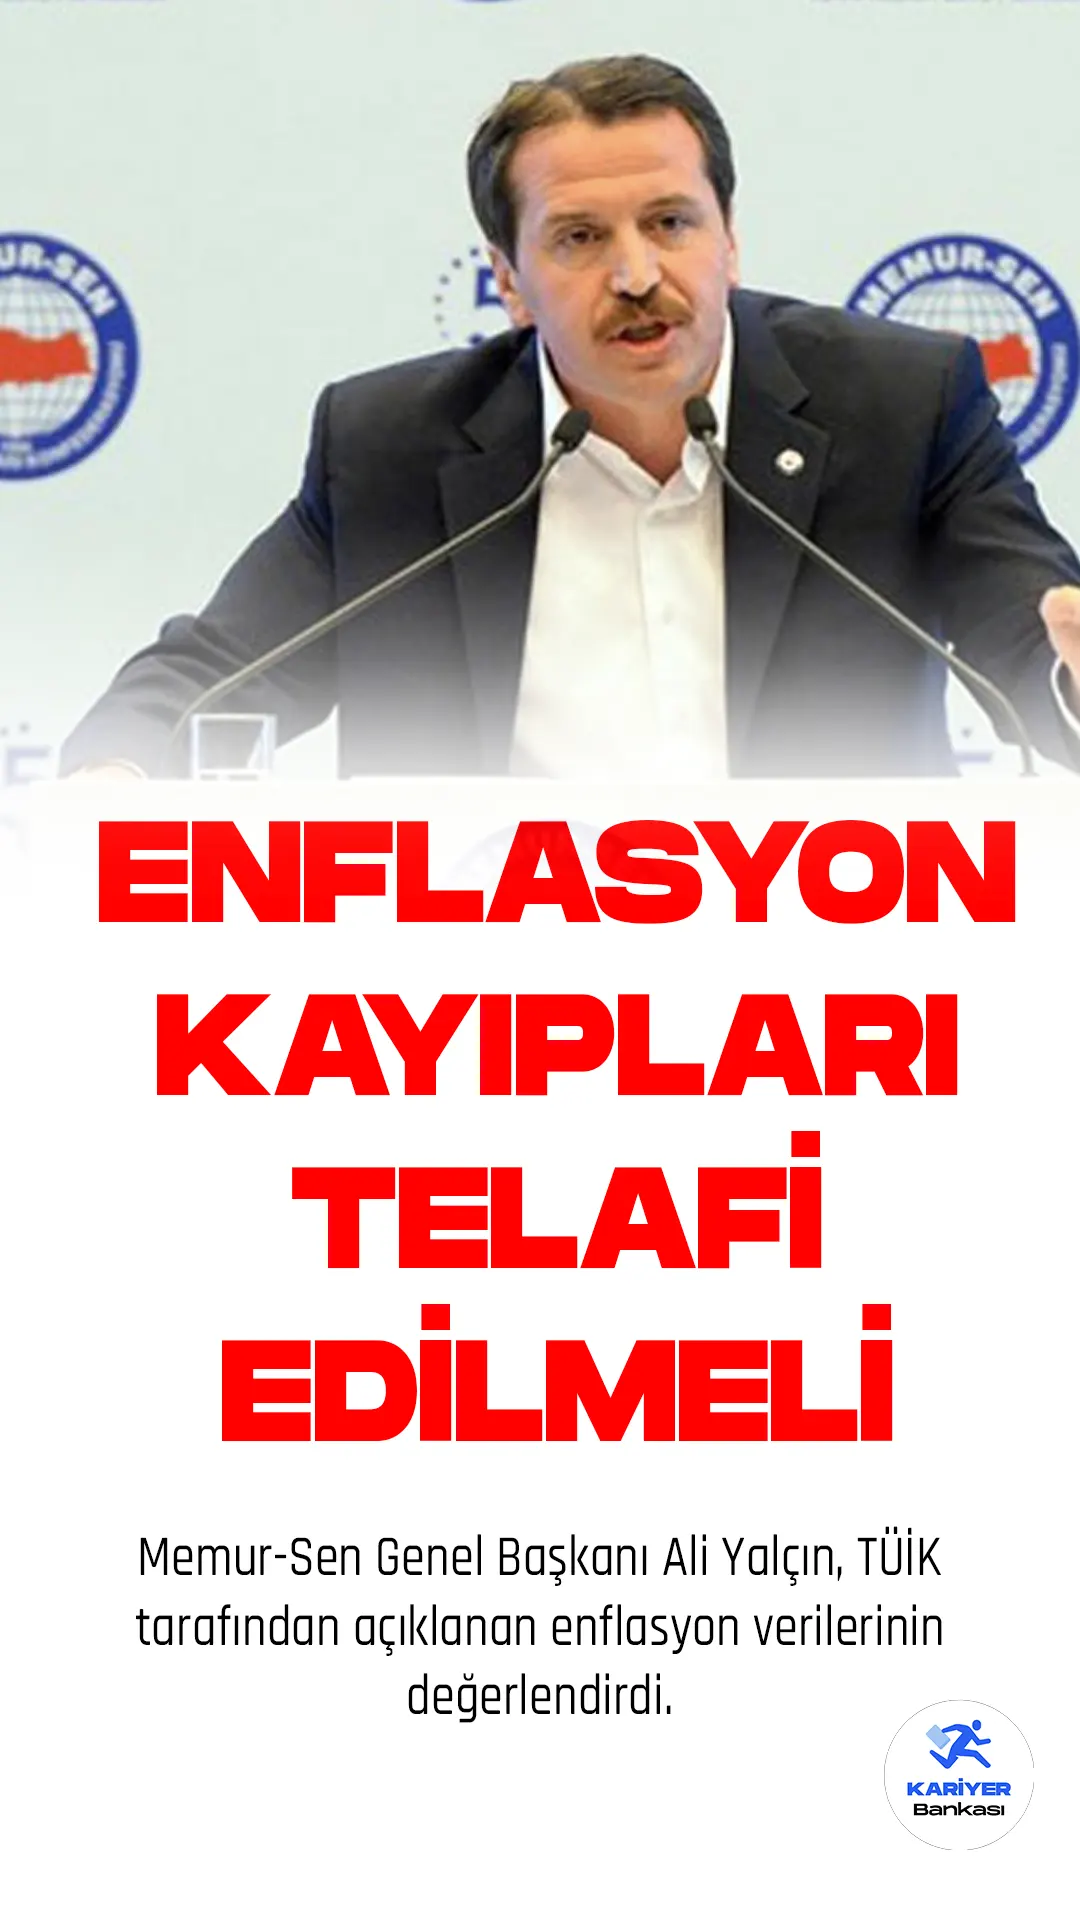 Memur-Sen Genel Başkanı Ali Yalçın, TÜİK tarafından açıklanan enflasyon verilerinin değerlendirdi. Yalçın, kamu görevlilerinin mali kayıplarının giderilmesi için eşit bir biçimde zam yapılması gerektiğini belirtti.